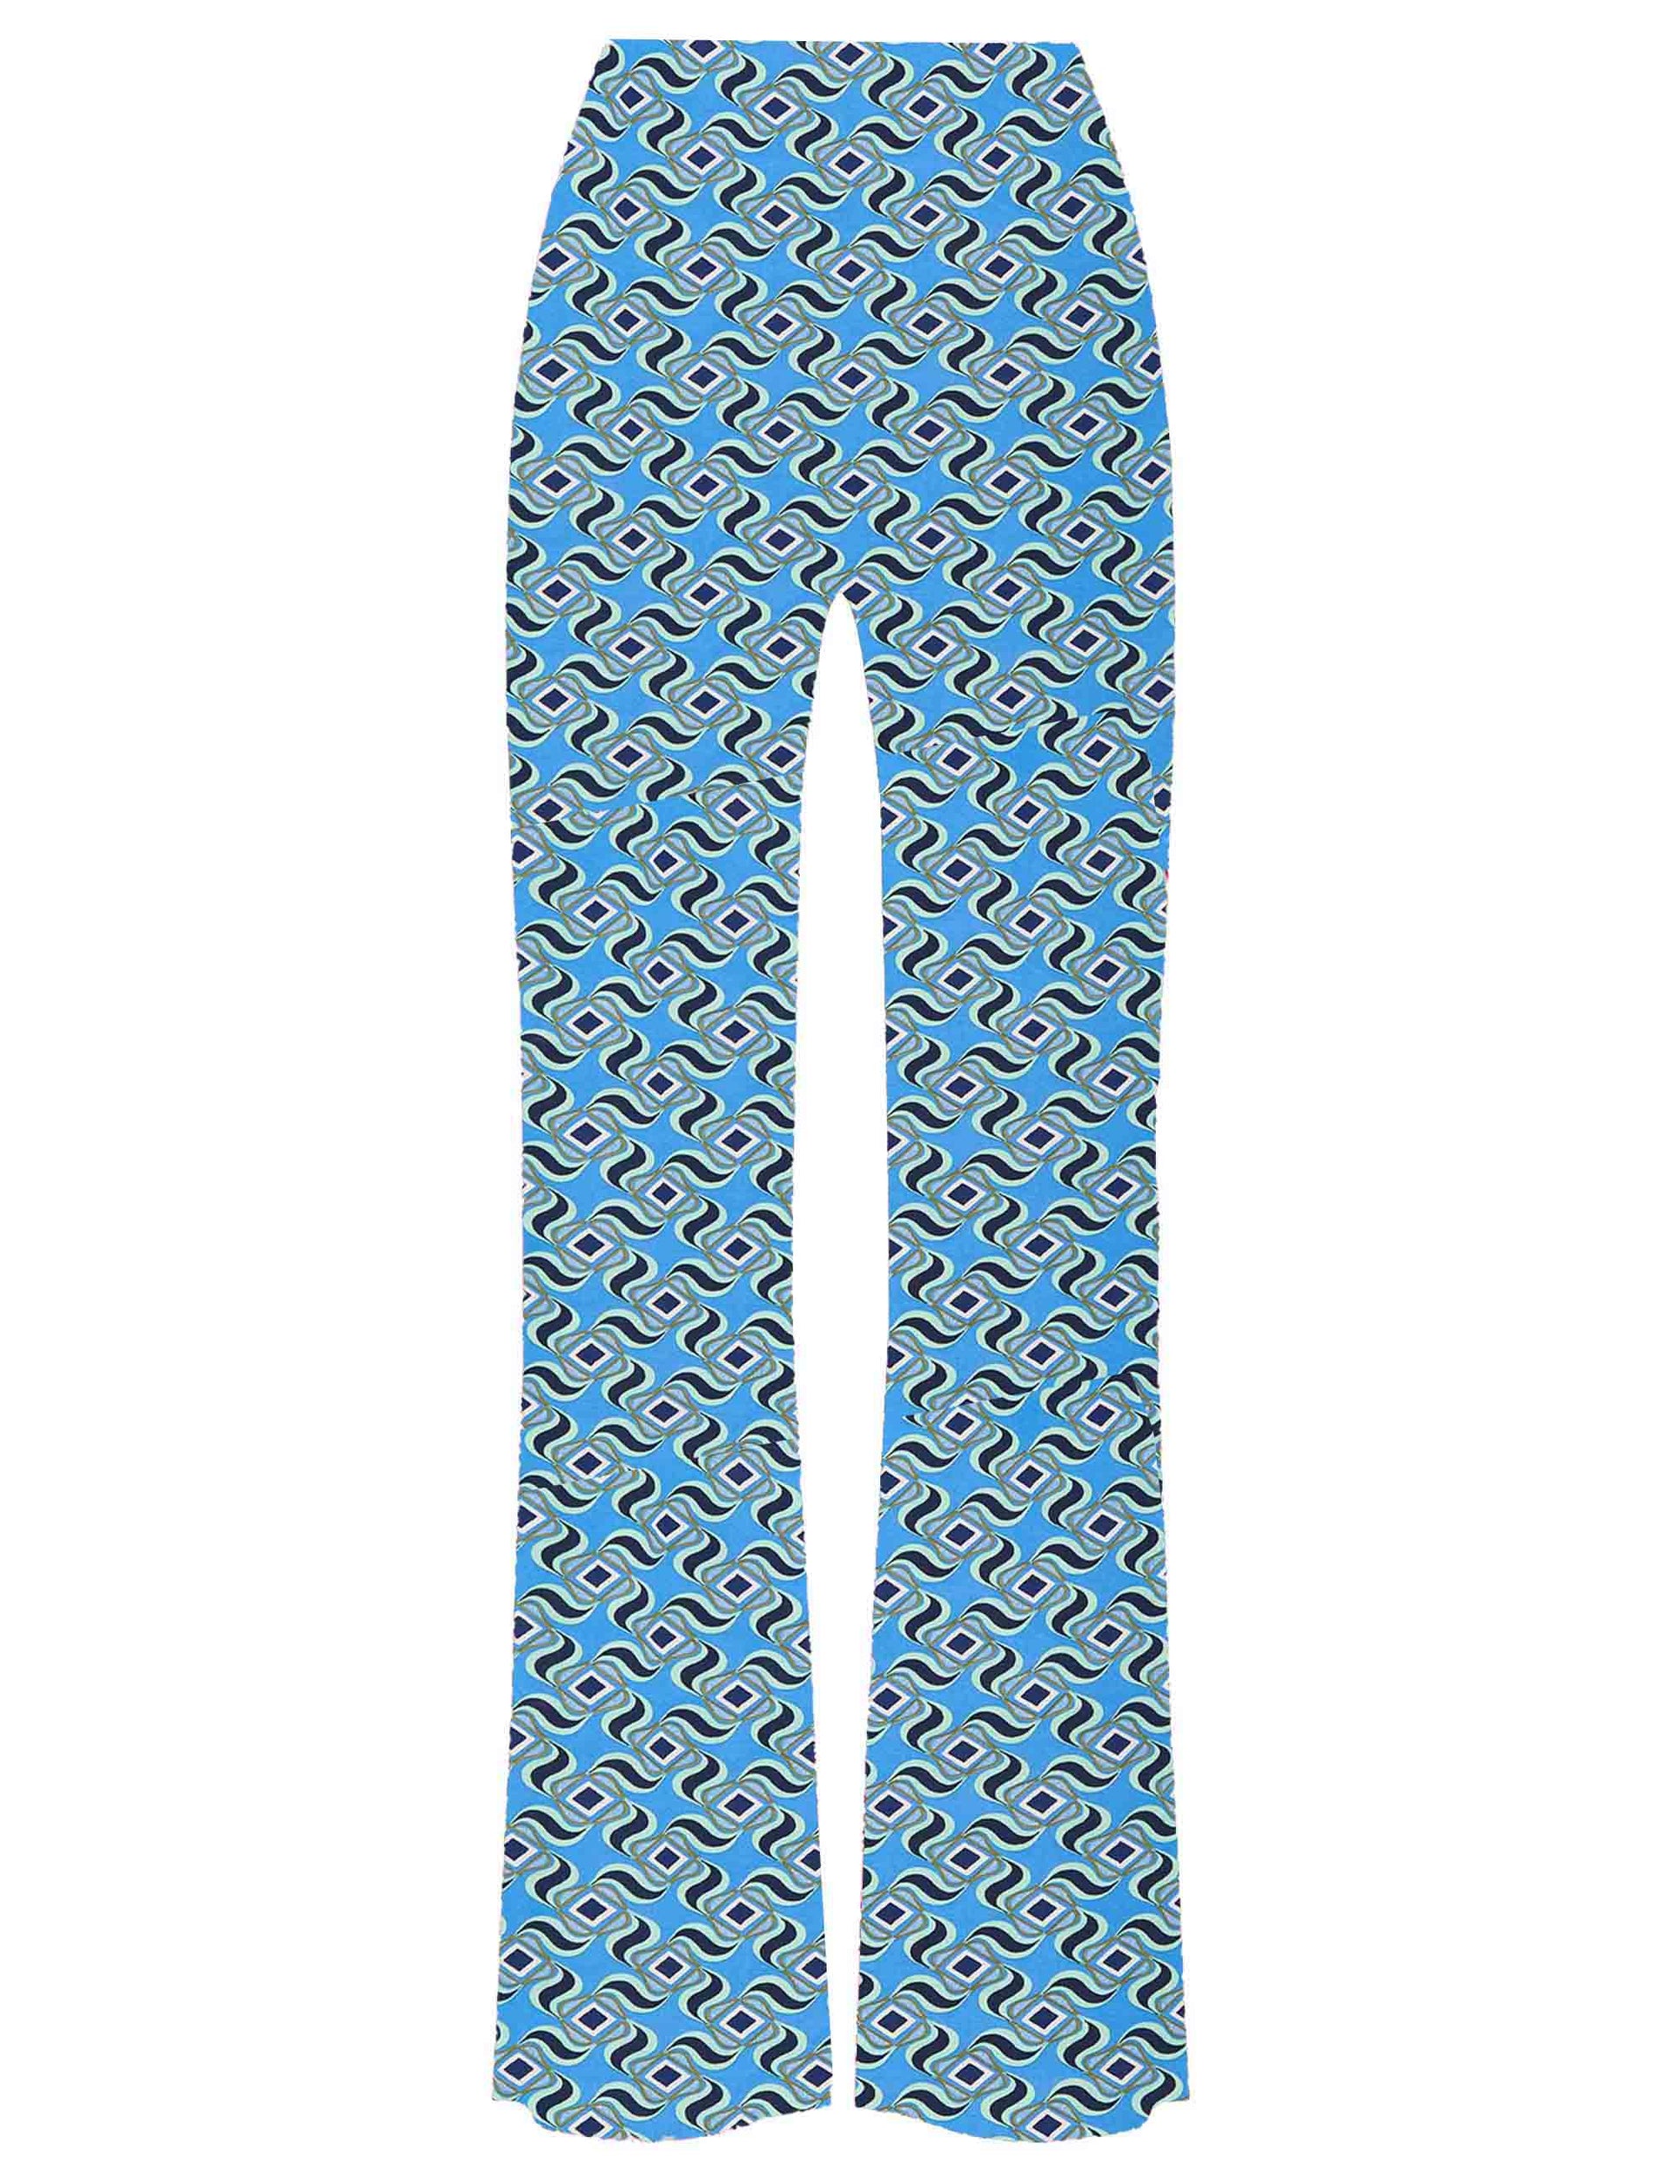 Pantaloni donna Swirl Print in jersey elasticizzato azzurro a fantasia